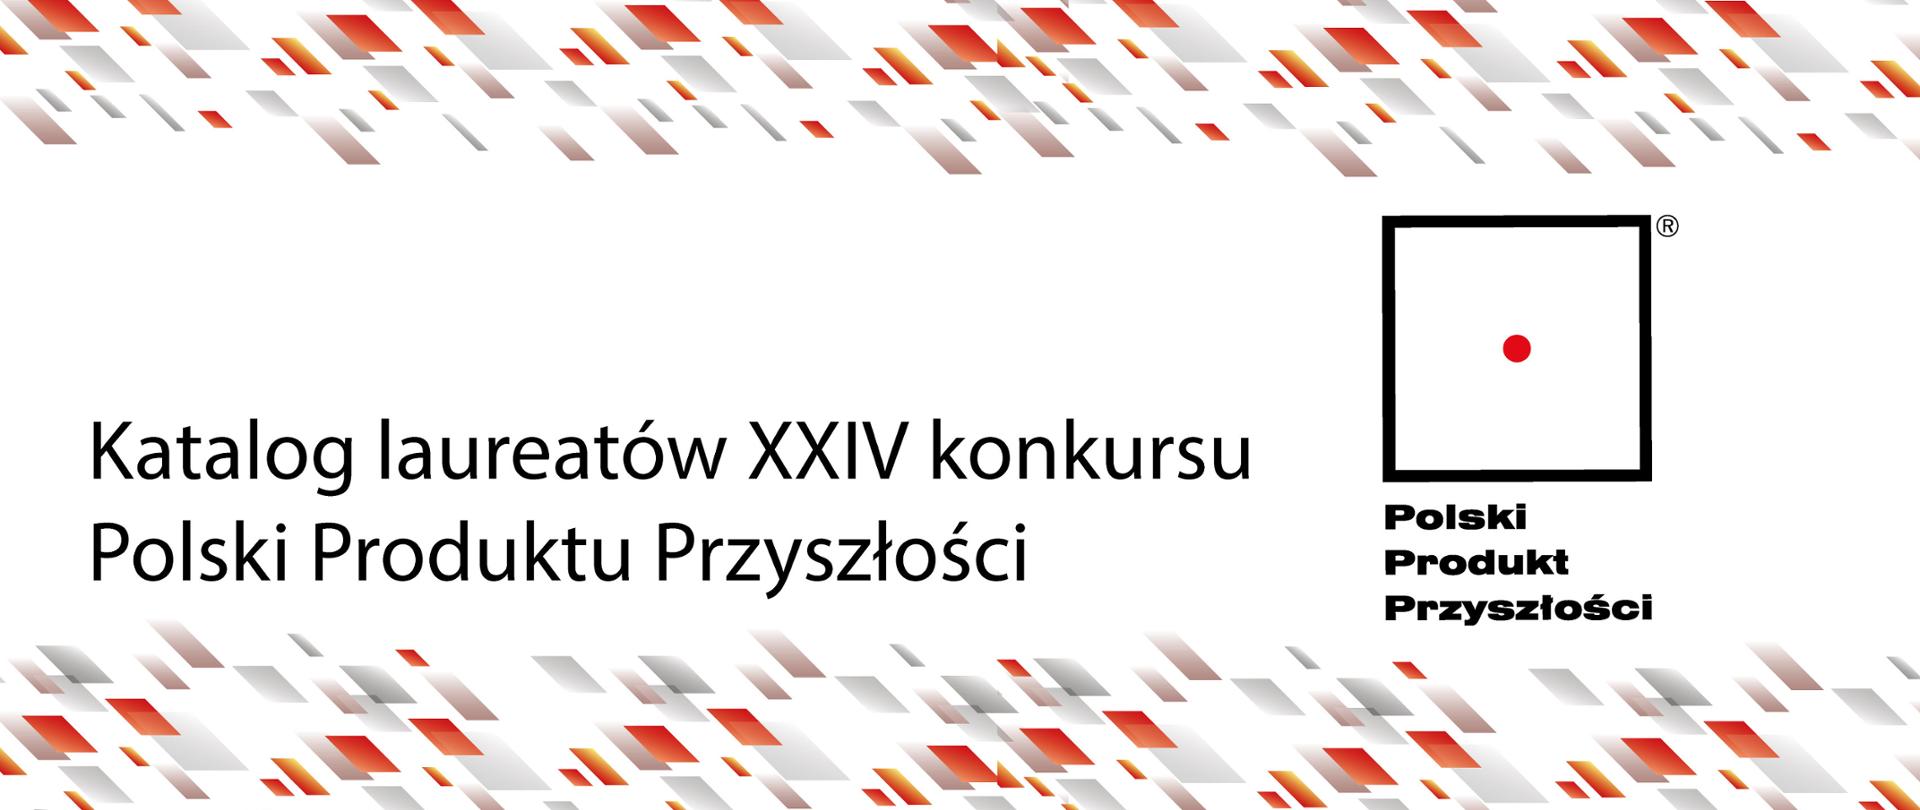 Katalog laureatów XXIV konkursu Polski Produktu Przyszłości